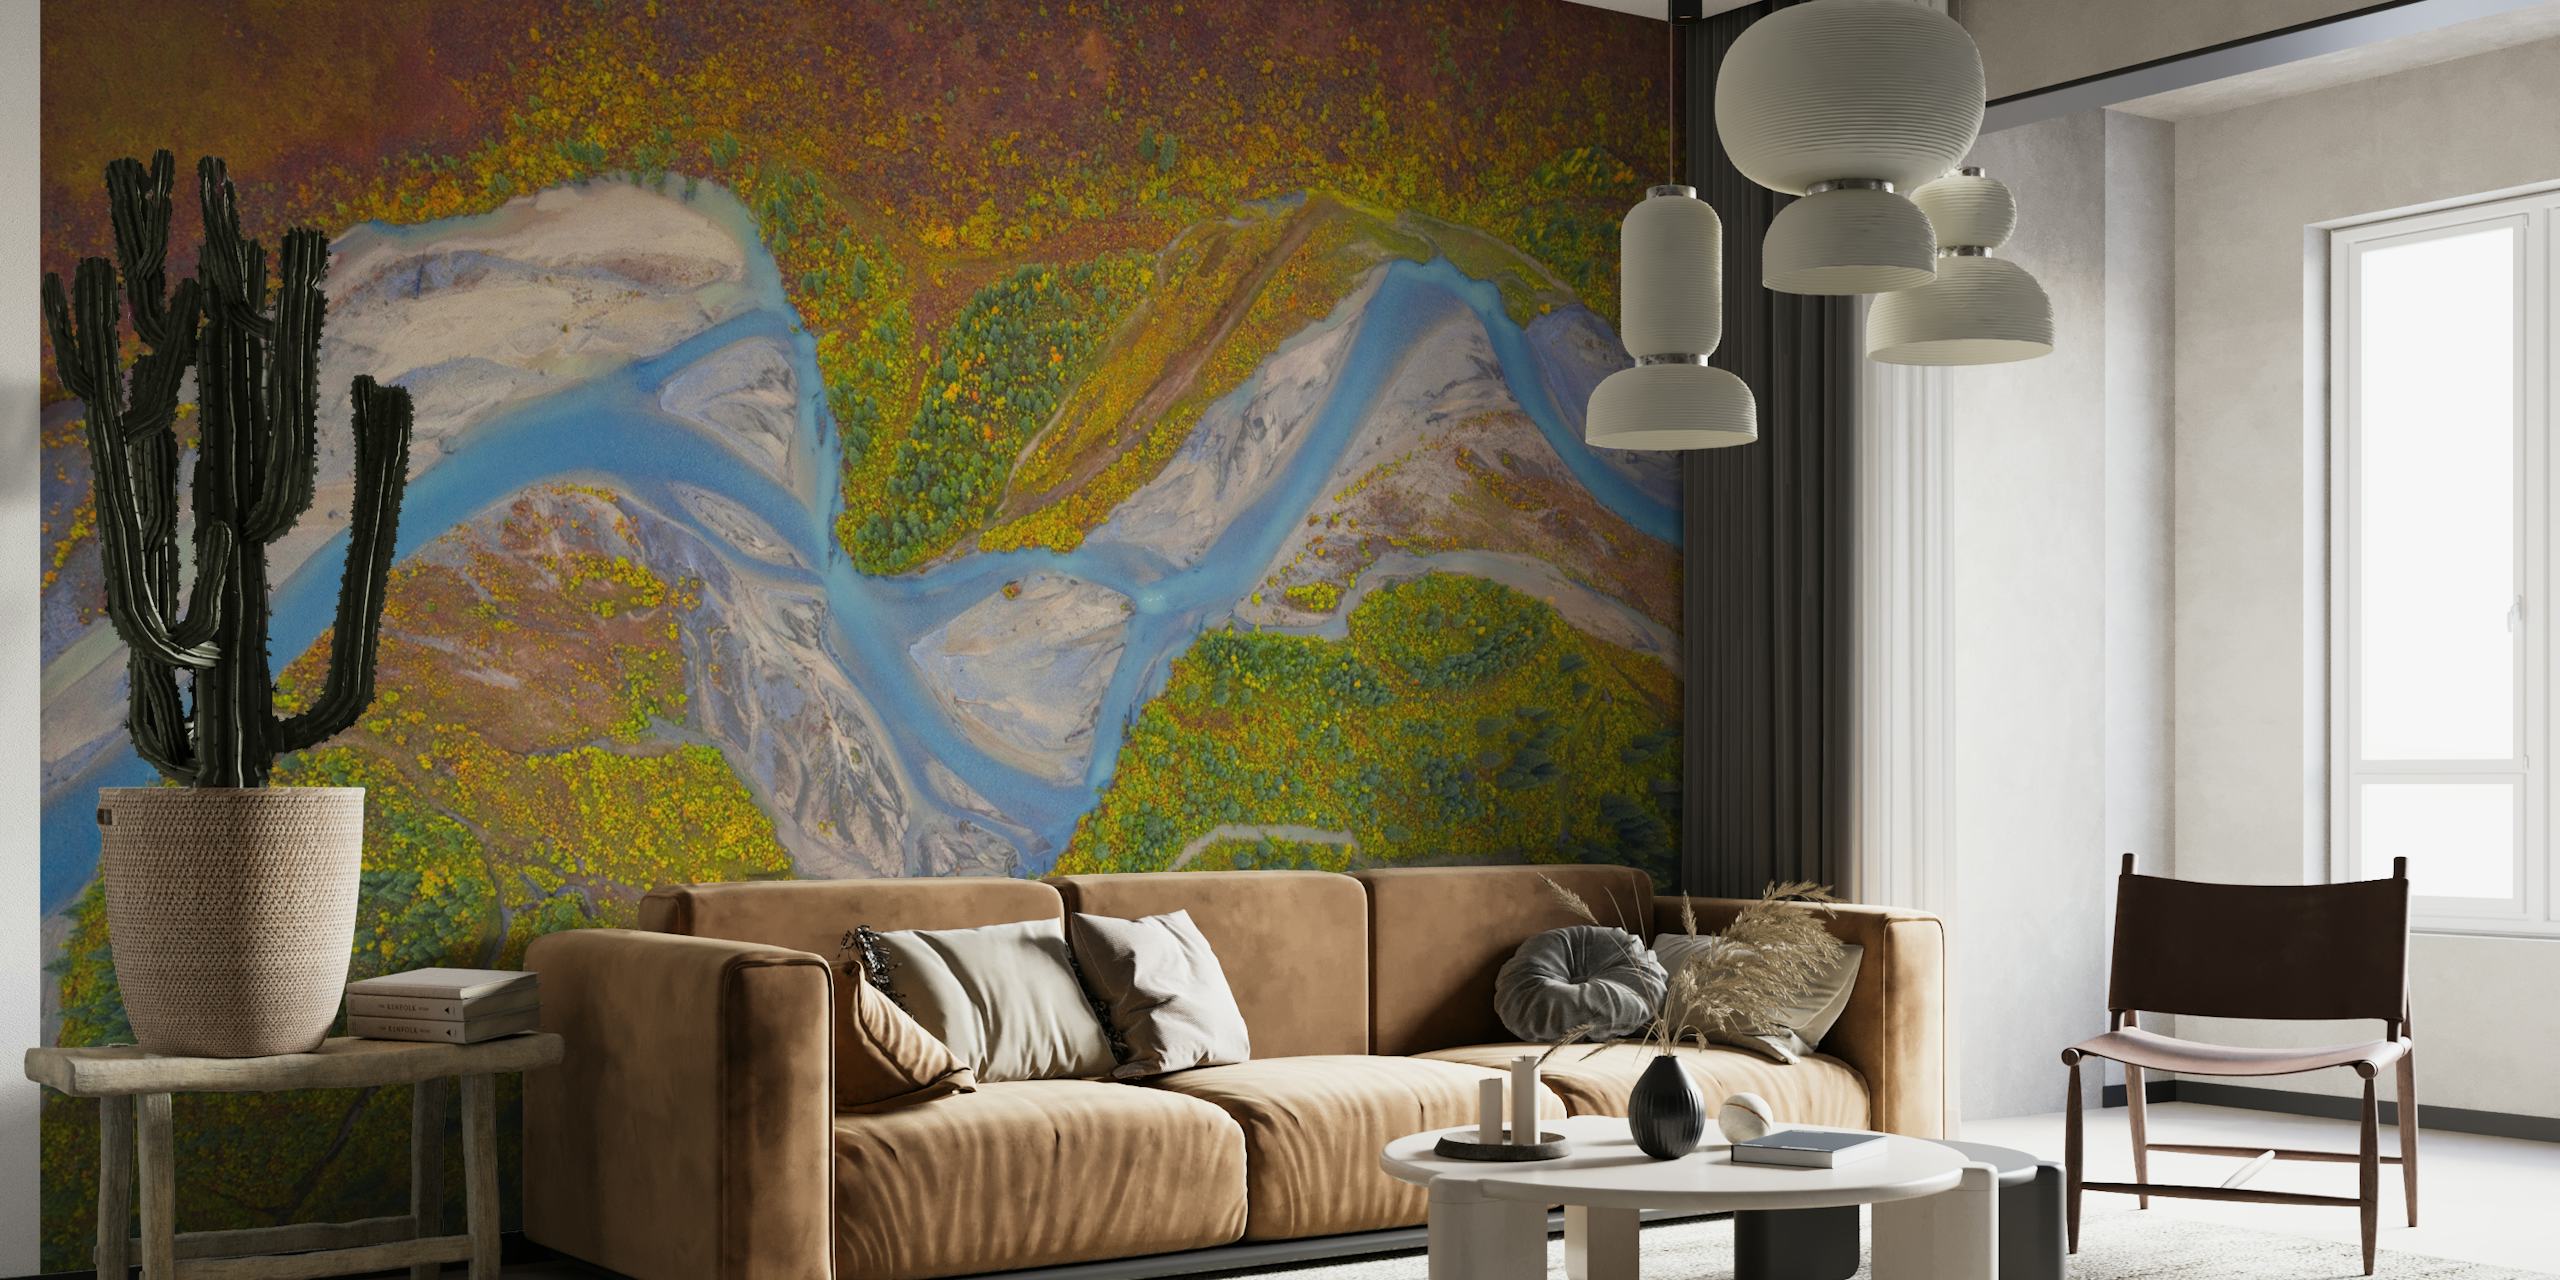 Matanuska-joen seinämaalaus ja luonnonkaunis Alaskan maisema, jossa on kiemurteleva joki ja värikkäitä niittyjä